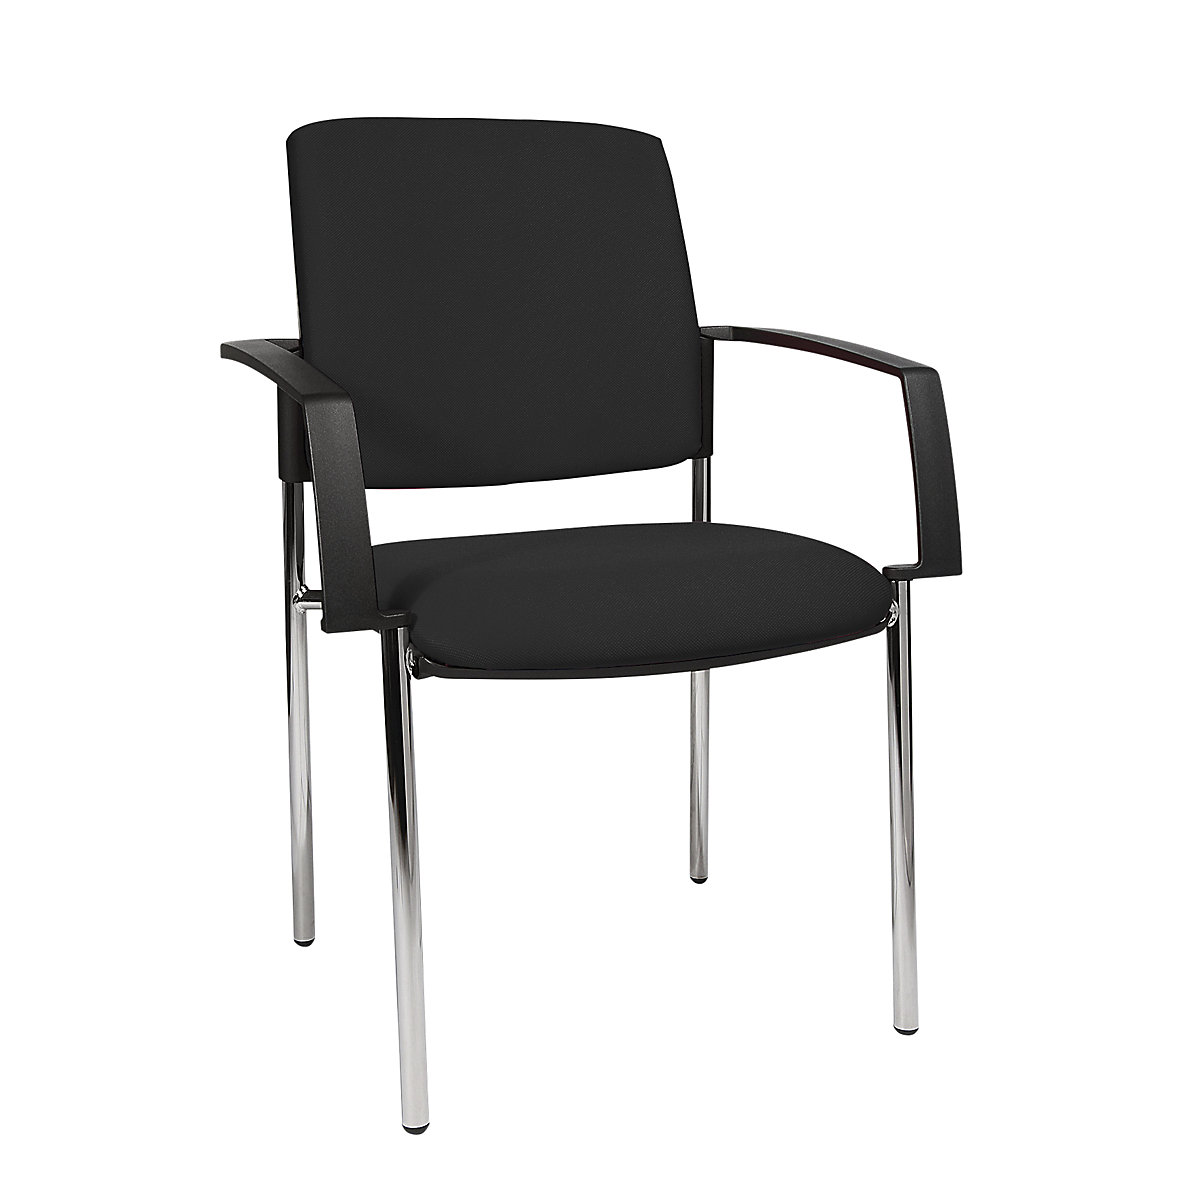 Čalúnená stohovacia stolička – Topstar, podstavec so štyrmi nohami, OJ 2 ks, podstavec pochrómovaný, čalúnenie čierna-6